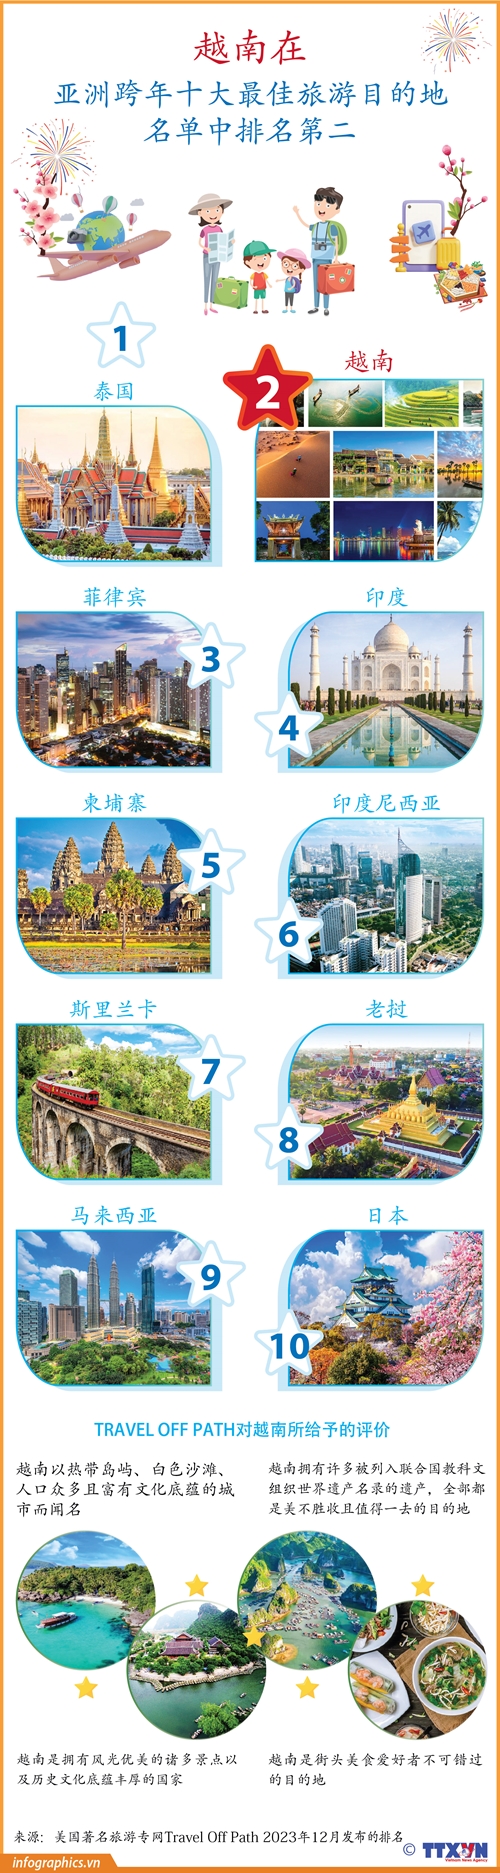 越南在亚洲跨年十大最佳旅游目的地名单中排名第二